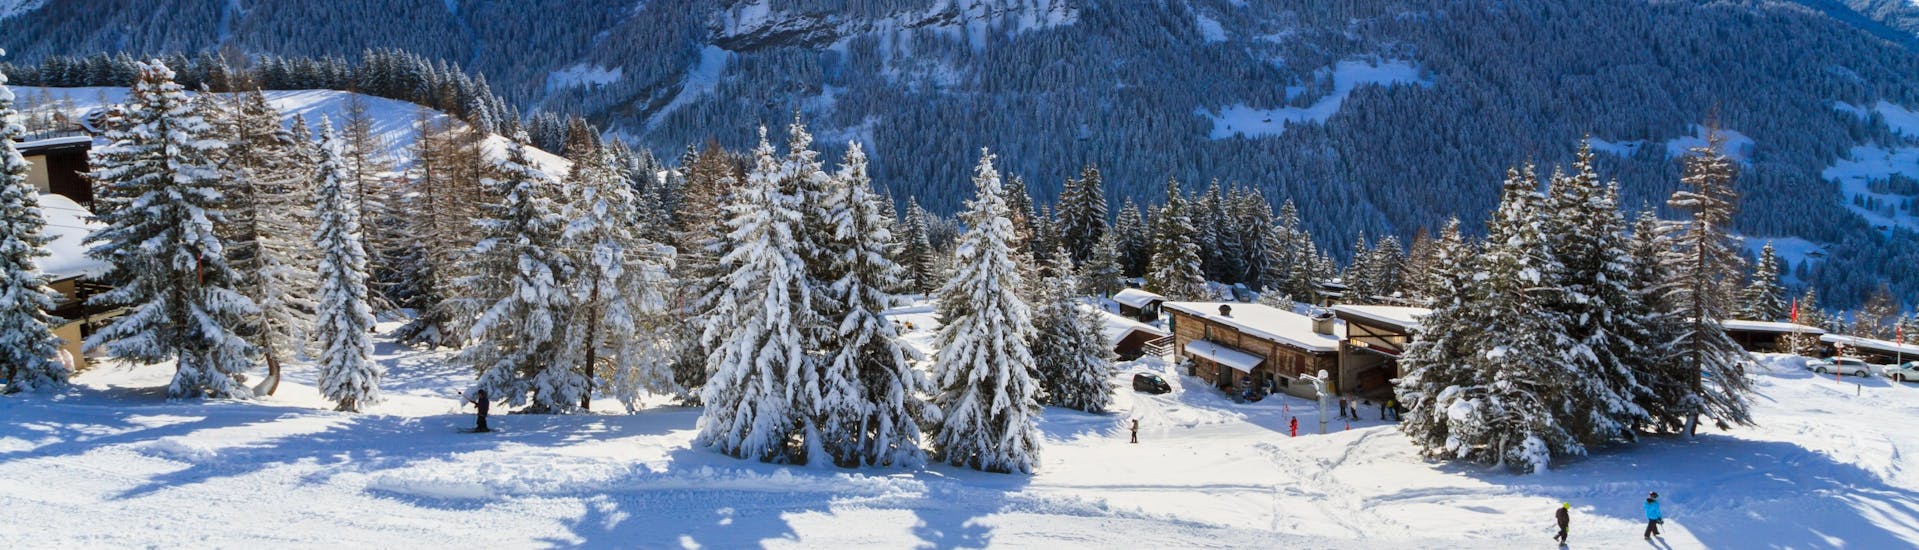 Une vue panoramique des pistes de ski et des montagnes environnantes de Villars, une station de ski suisse populaire dans les Alpes Vaudoises où les visiteurs peuvent prendre des cours de ski avec une des écoles de ski locales.